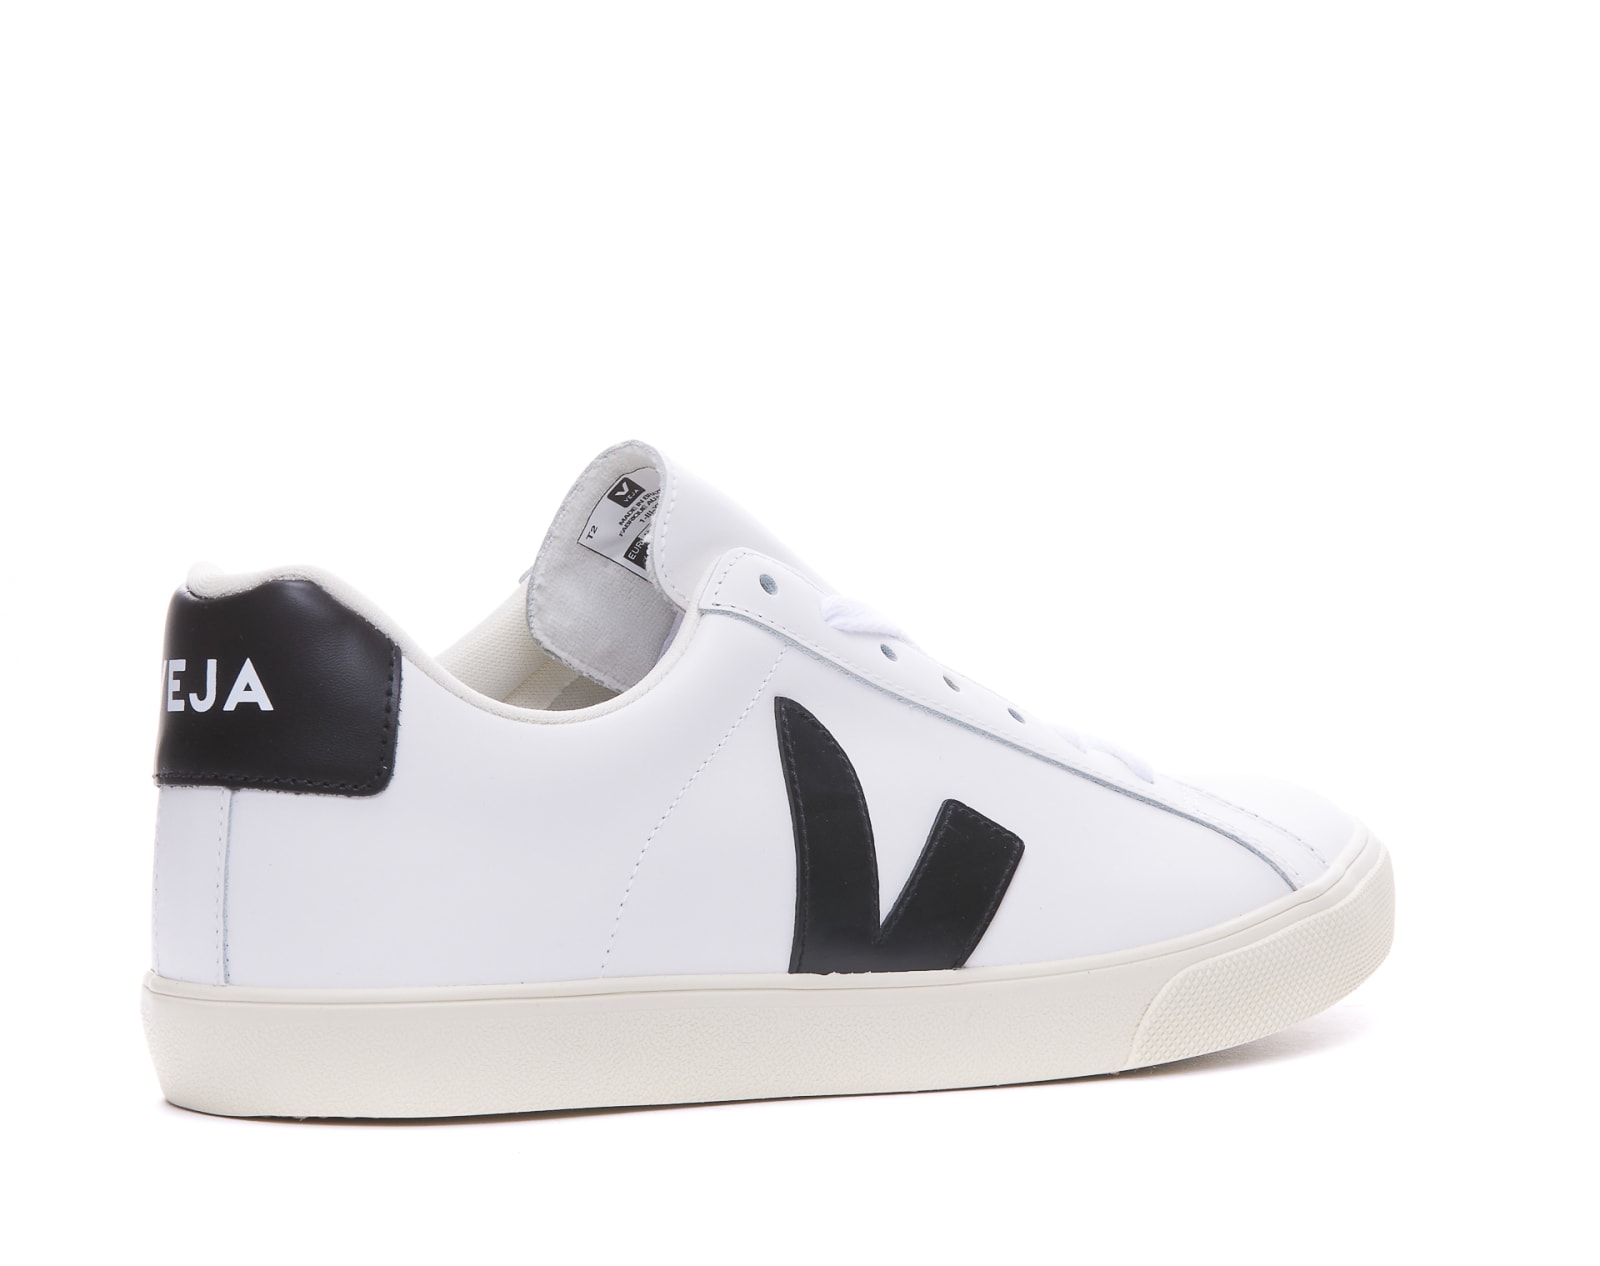 Shop Veja Esplar Sneakers In Extra White Black